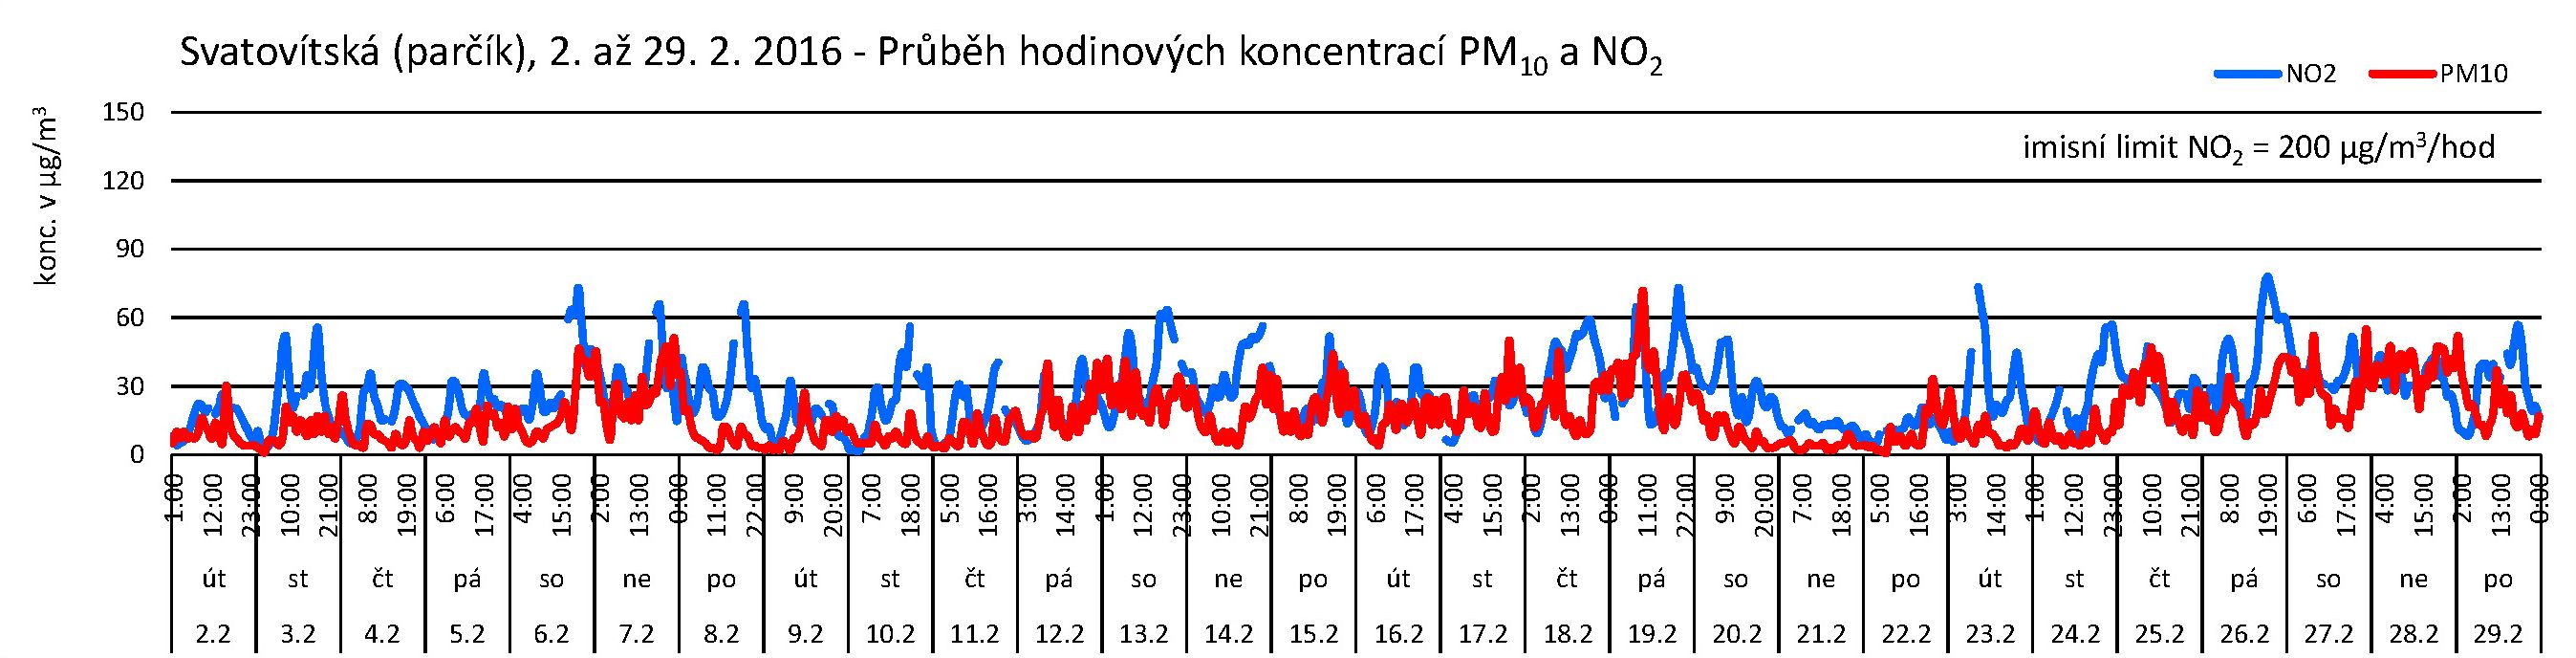 Svatovítská - 02.2016 - NO2 a PM10